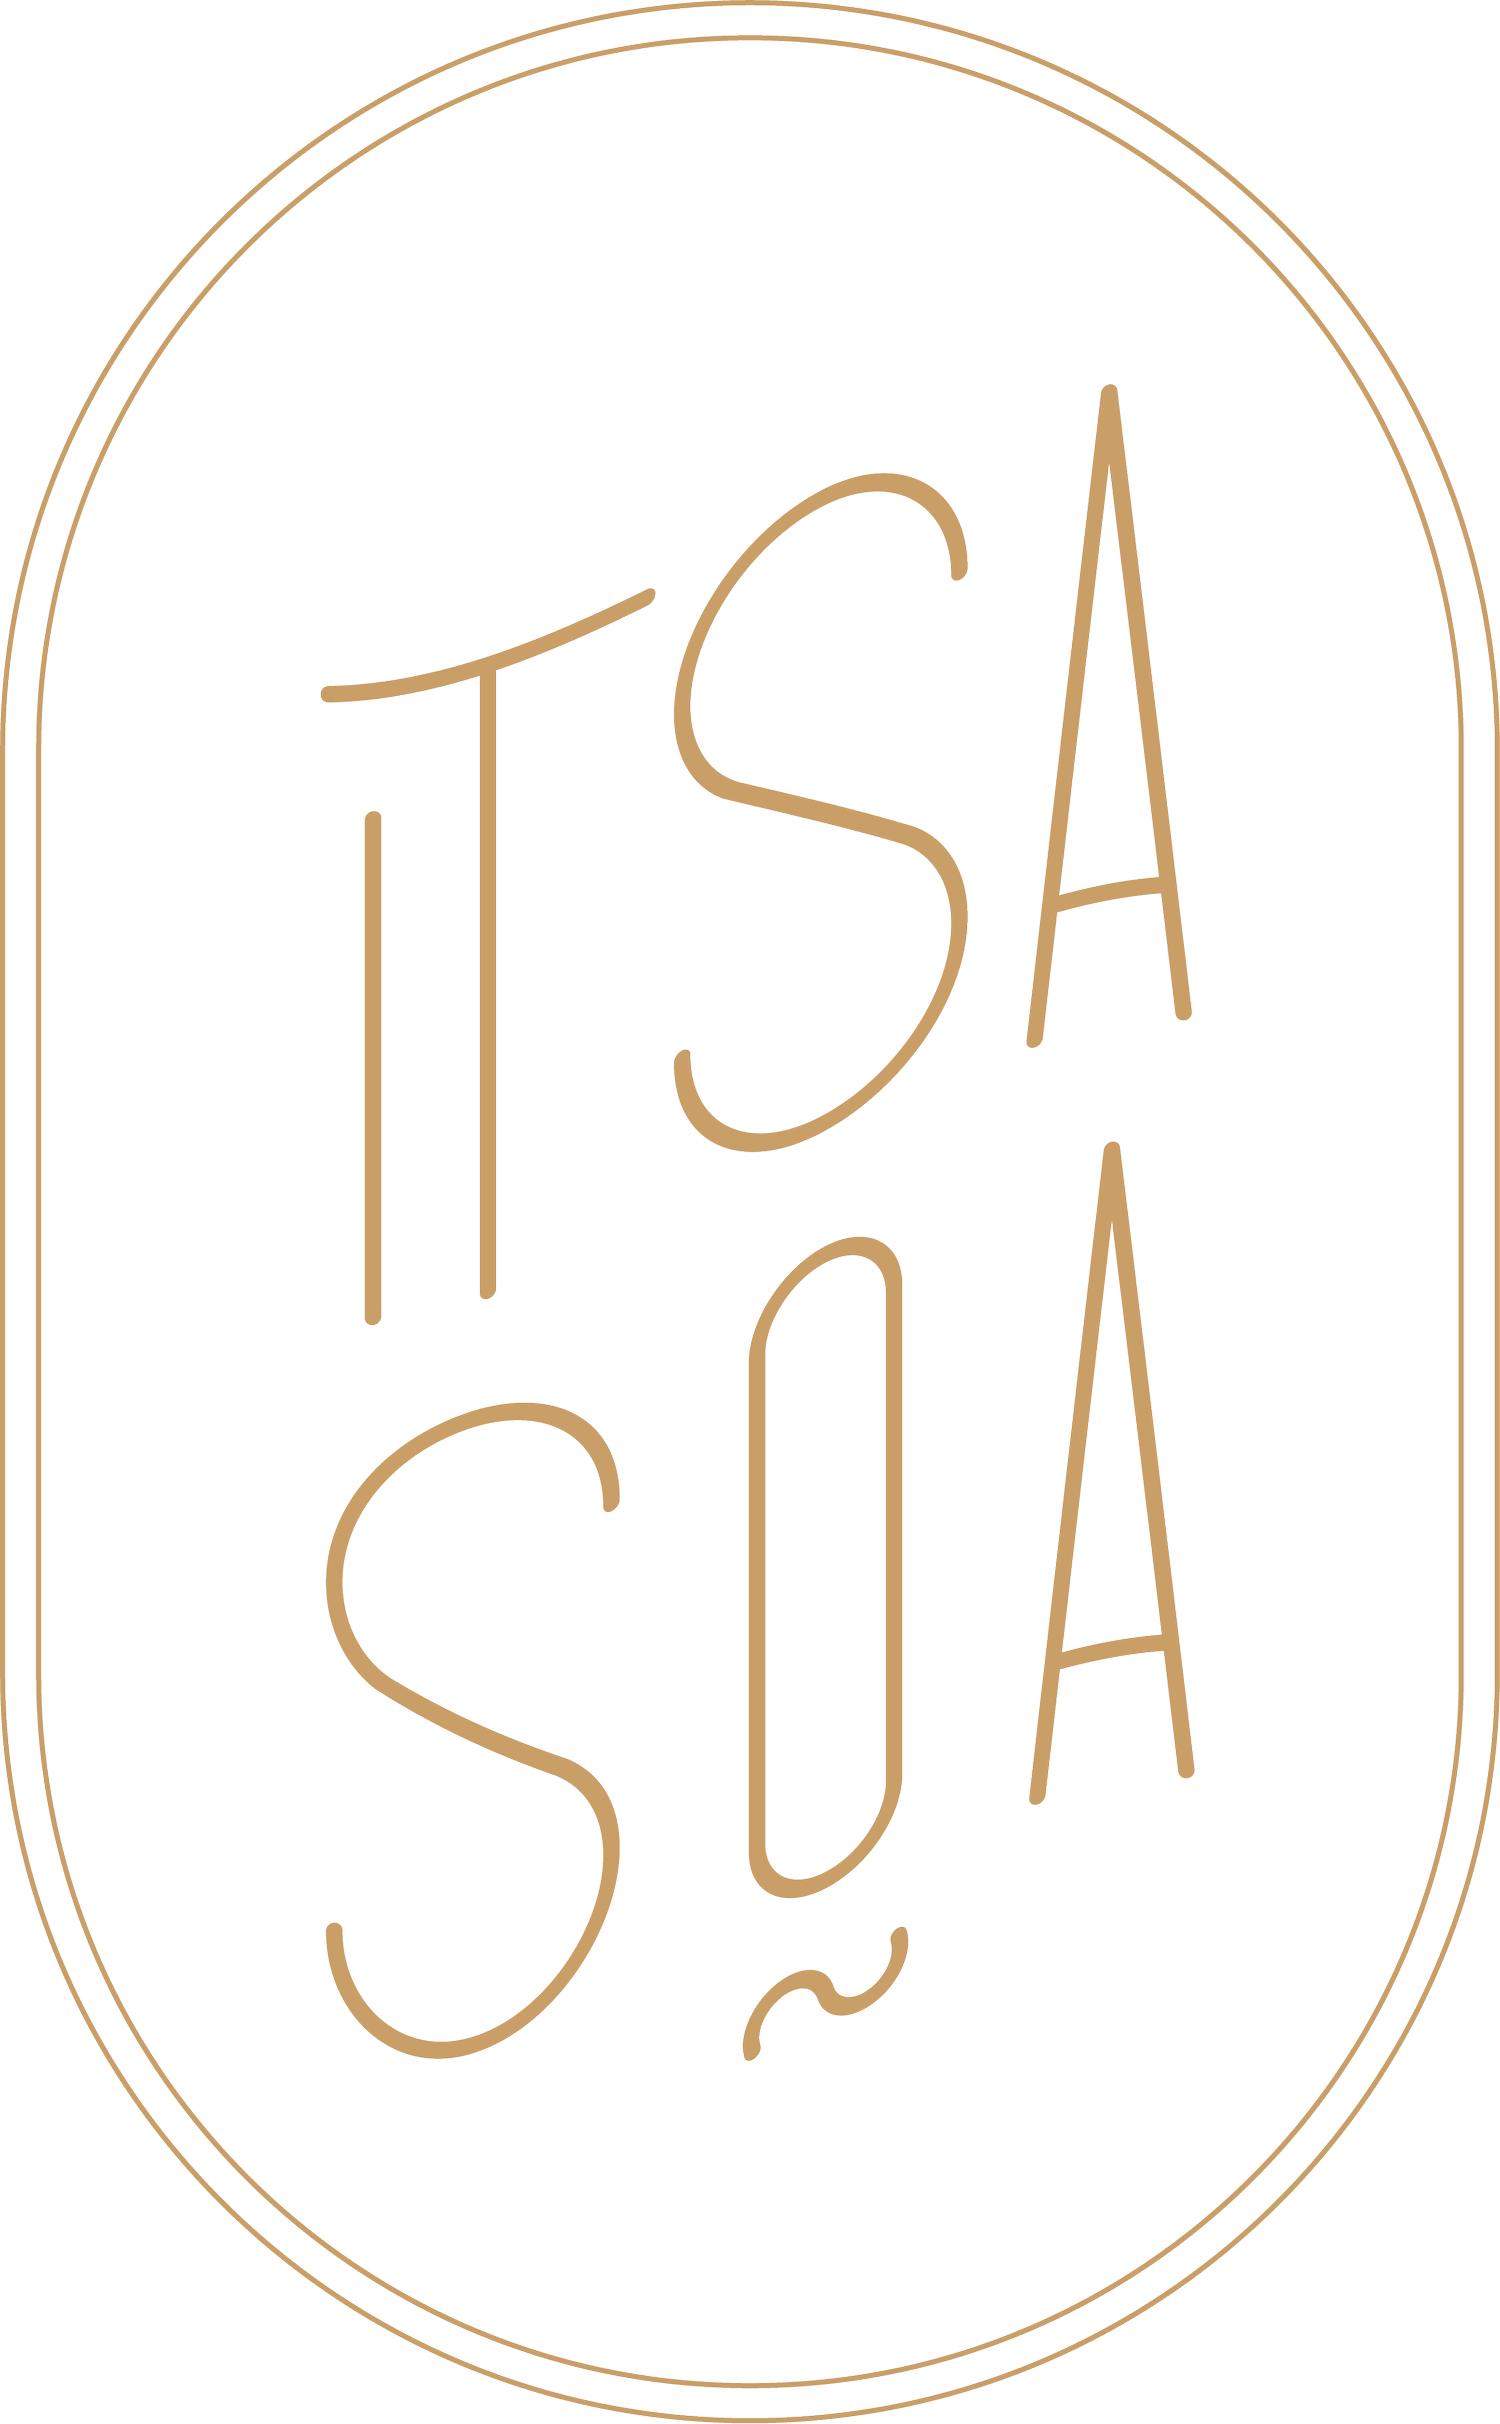 Itsasoa Restaurant à Carnac 